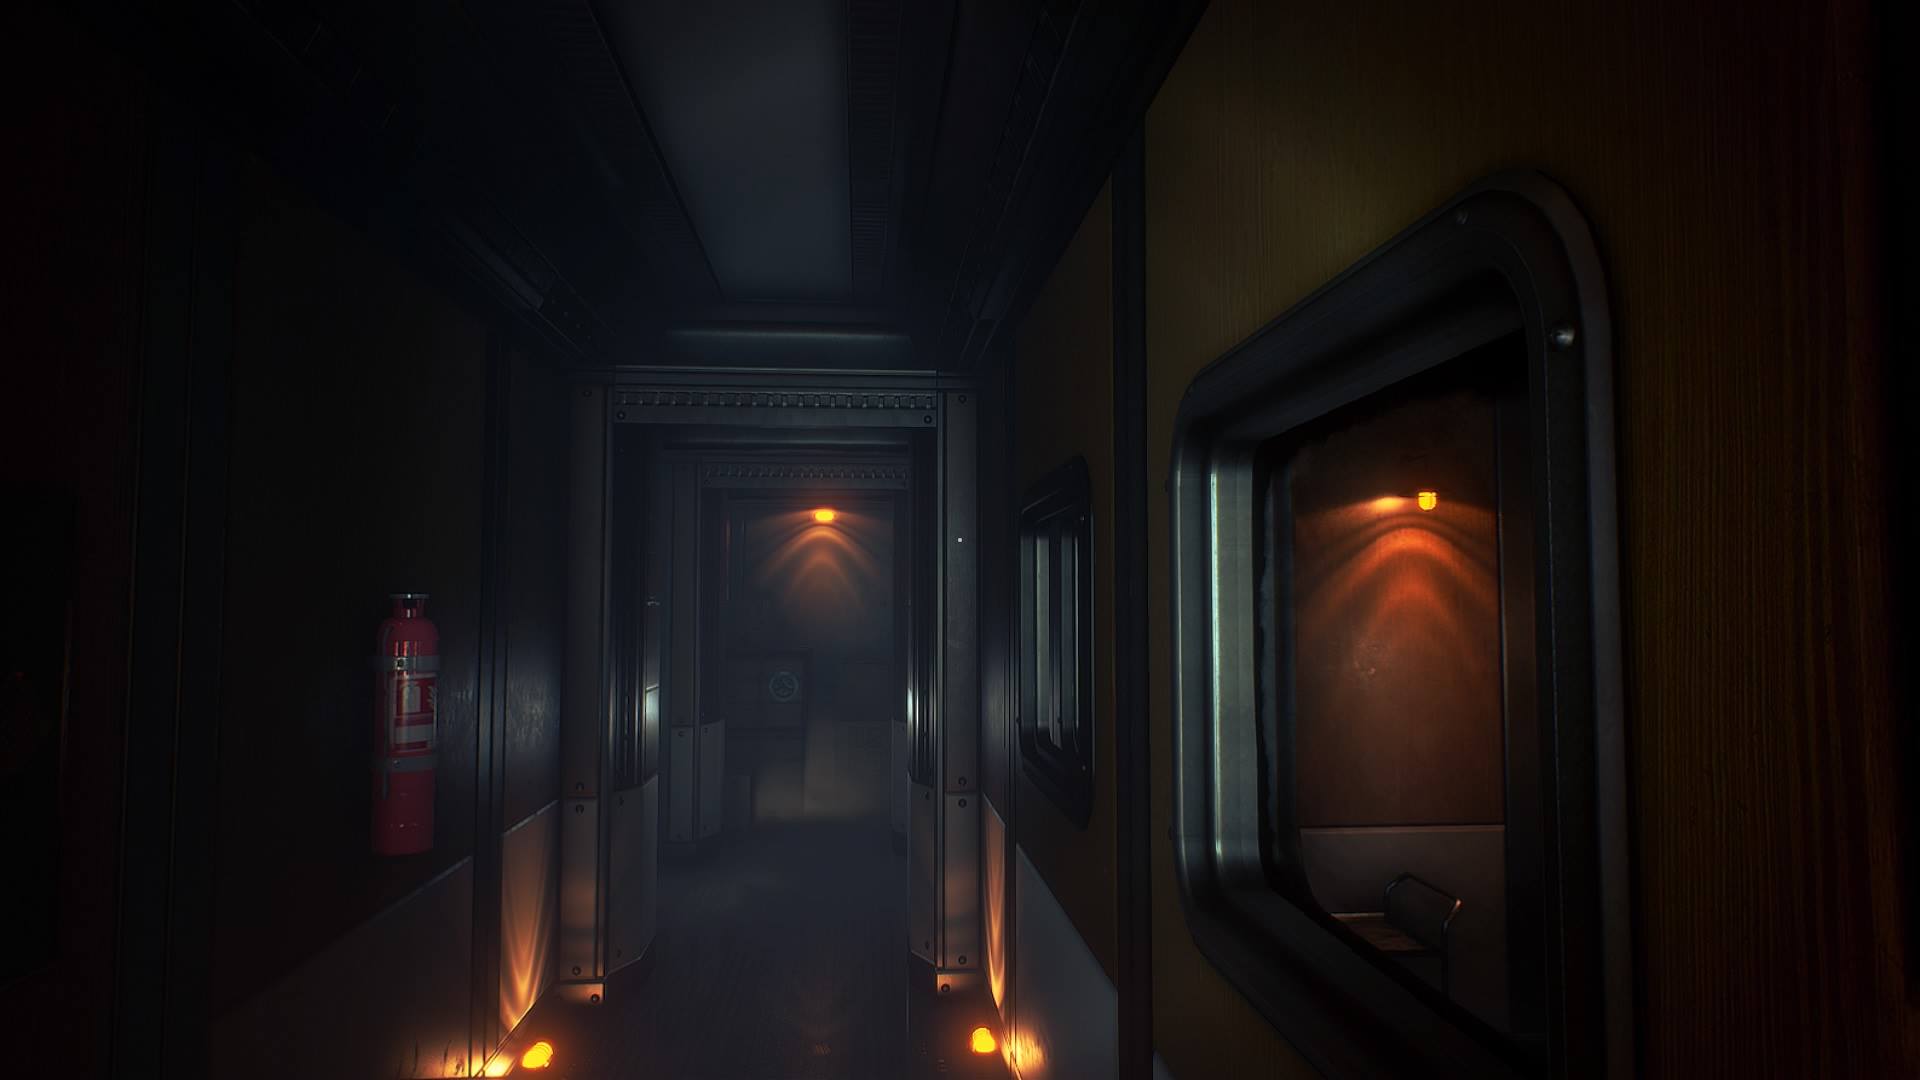 Conarium's dimly lit hallways hide puzzling secrets.